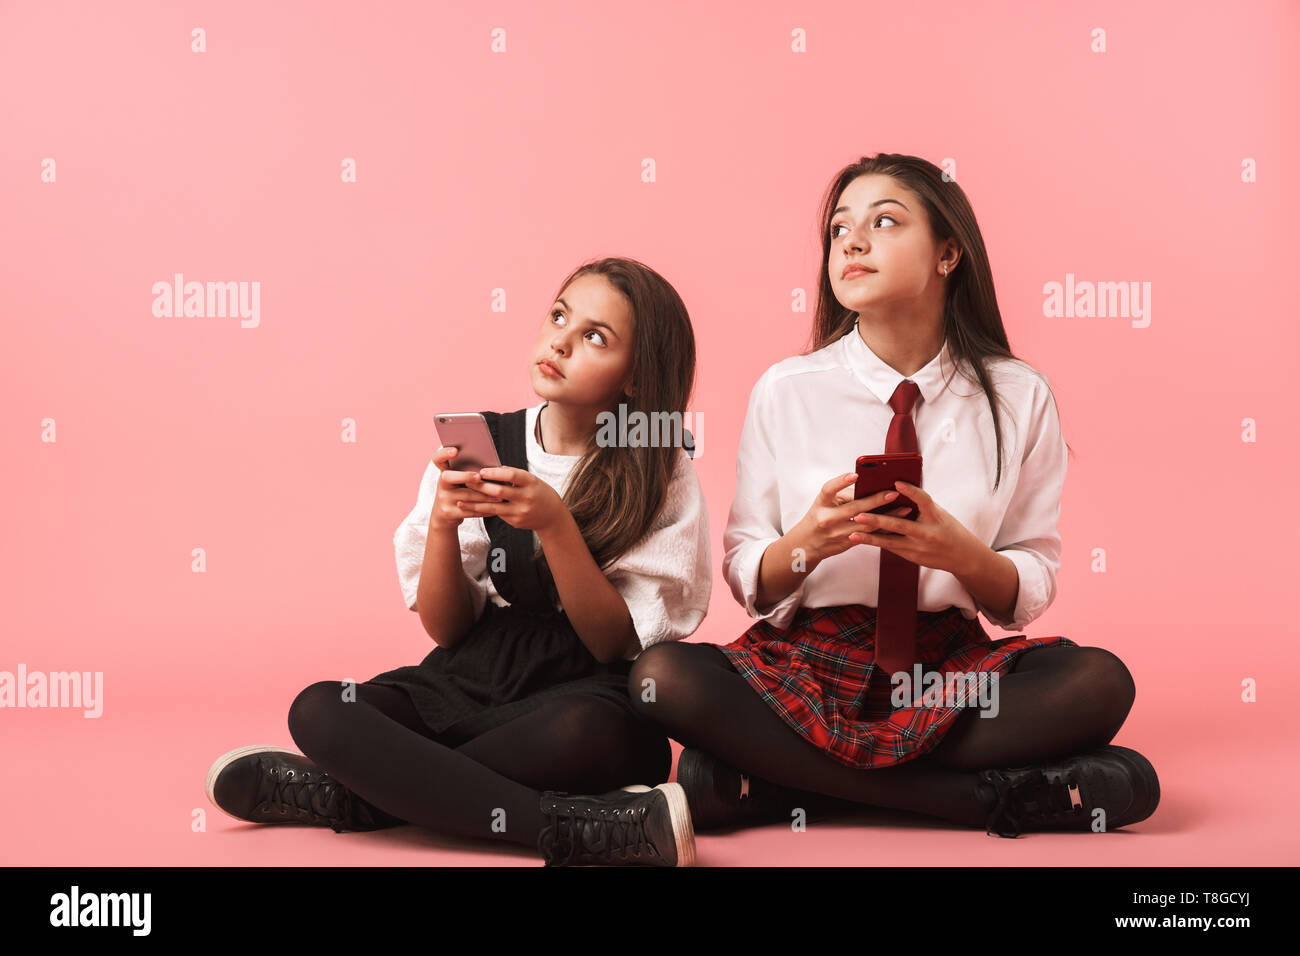 Ritratto di Allegro ragazze in uniforme scolastica utilizzando i telefoni cellulari mentre è seduto sul pavimento isolato su sfondo rosso Foto Stock